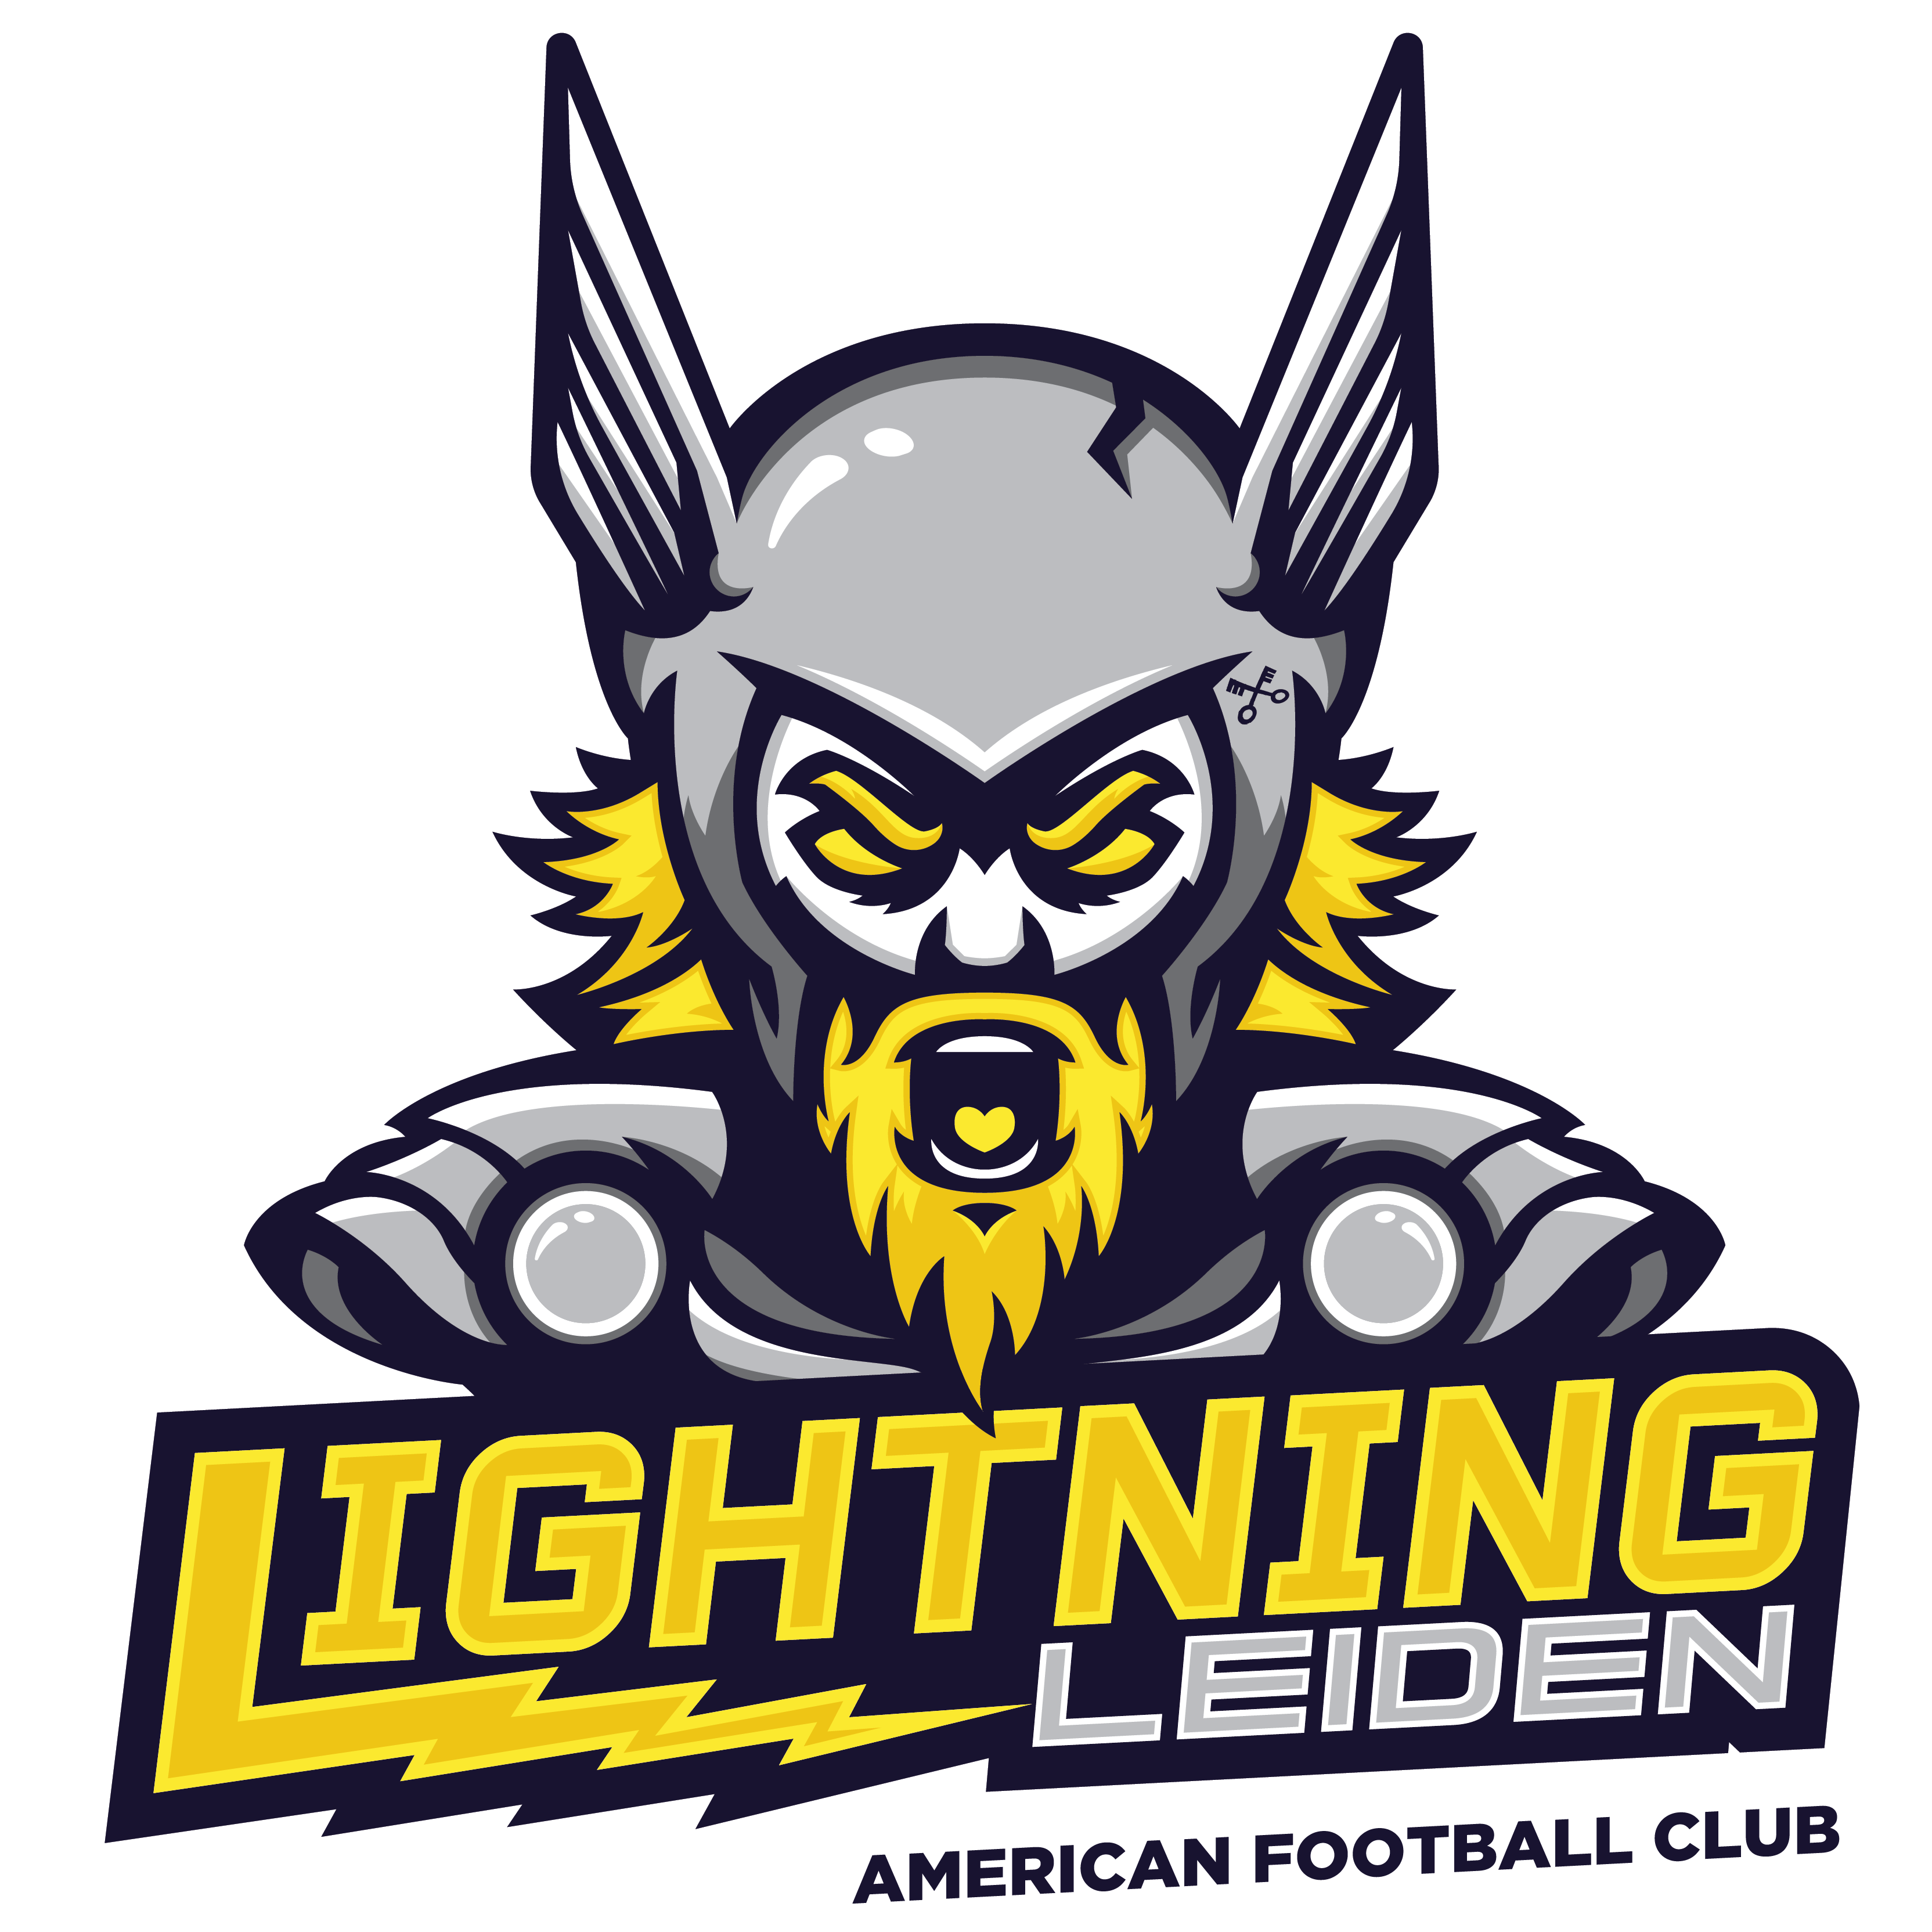 American Football Vereniging Lightning Leiden